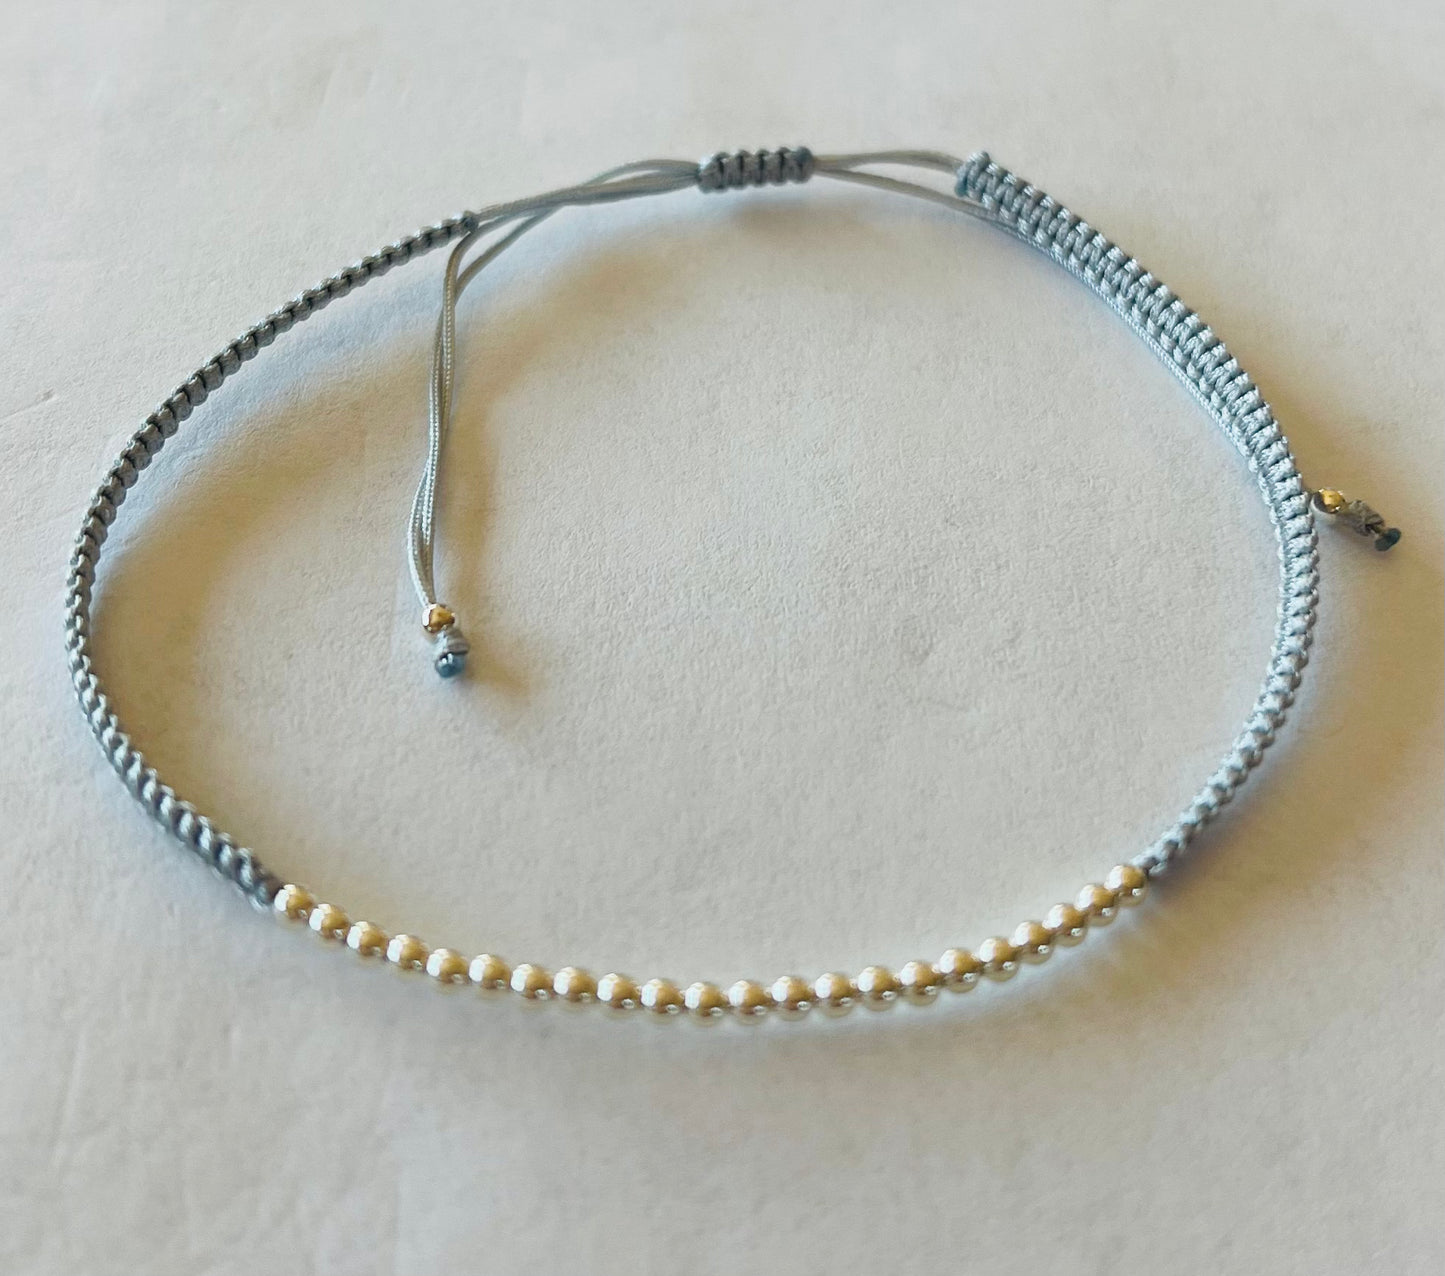 2mm Sterling Silver Bead Bracelet Adjustable